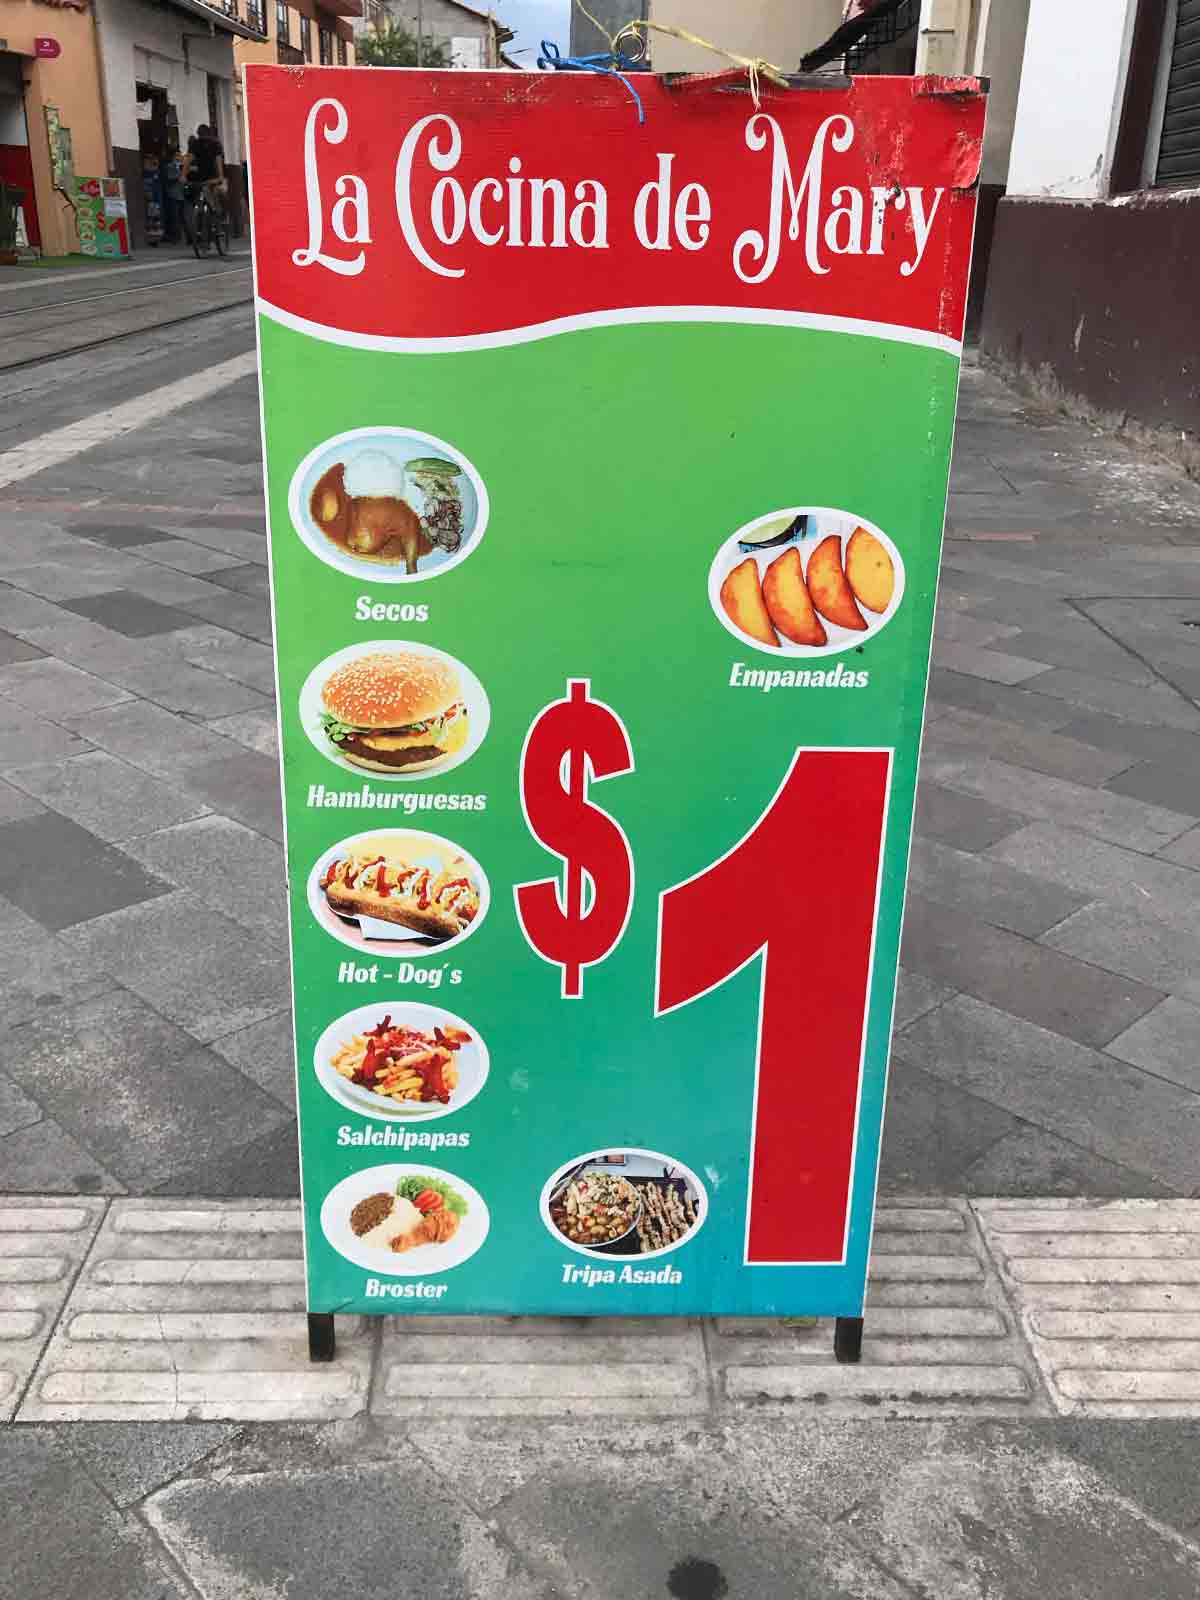 local food prices in ecuador